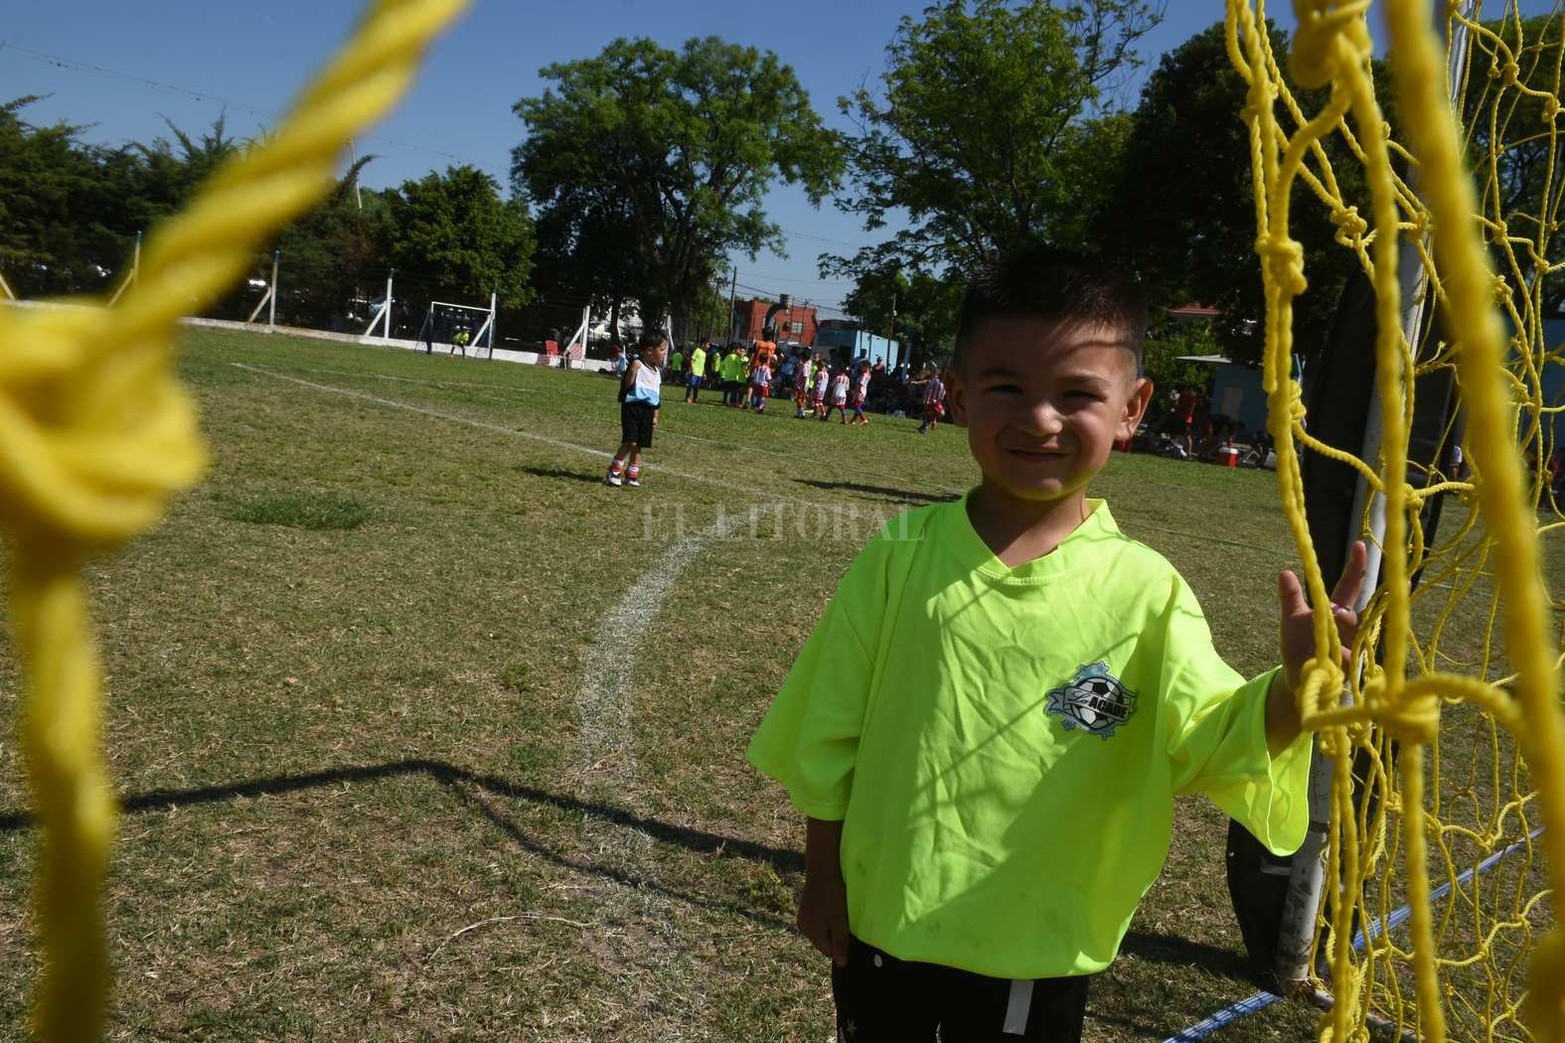 Los niños de fiesta. La cancha de Ciclón Racing tuvo un nuevo encuentro de escuelitas de fútbol. Participaron cientos de niños de corta edad junto a su familia y amigos.